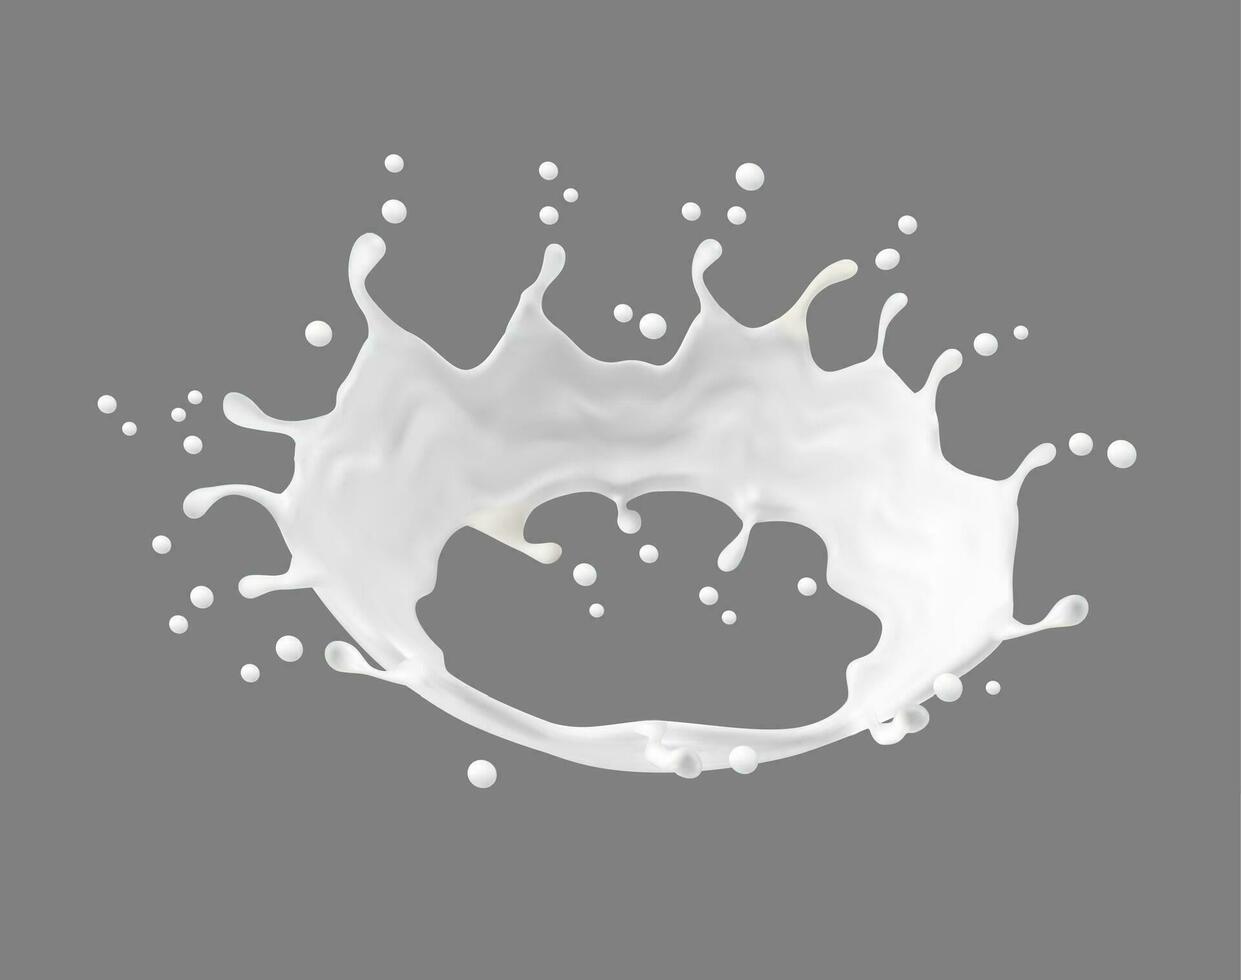 leite creme ou iogurte branco líquido corona respingo vetor